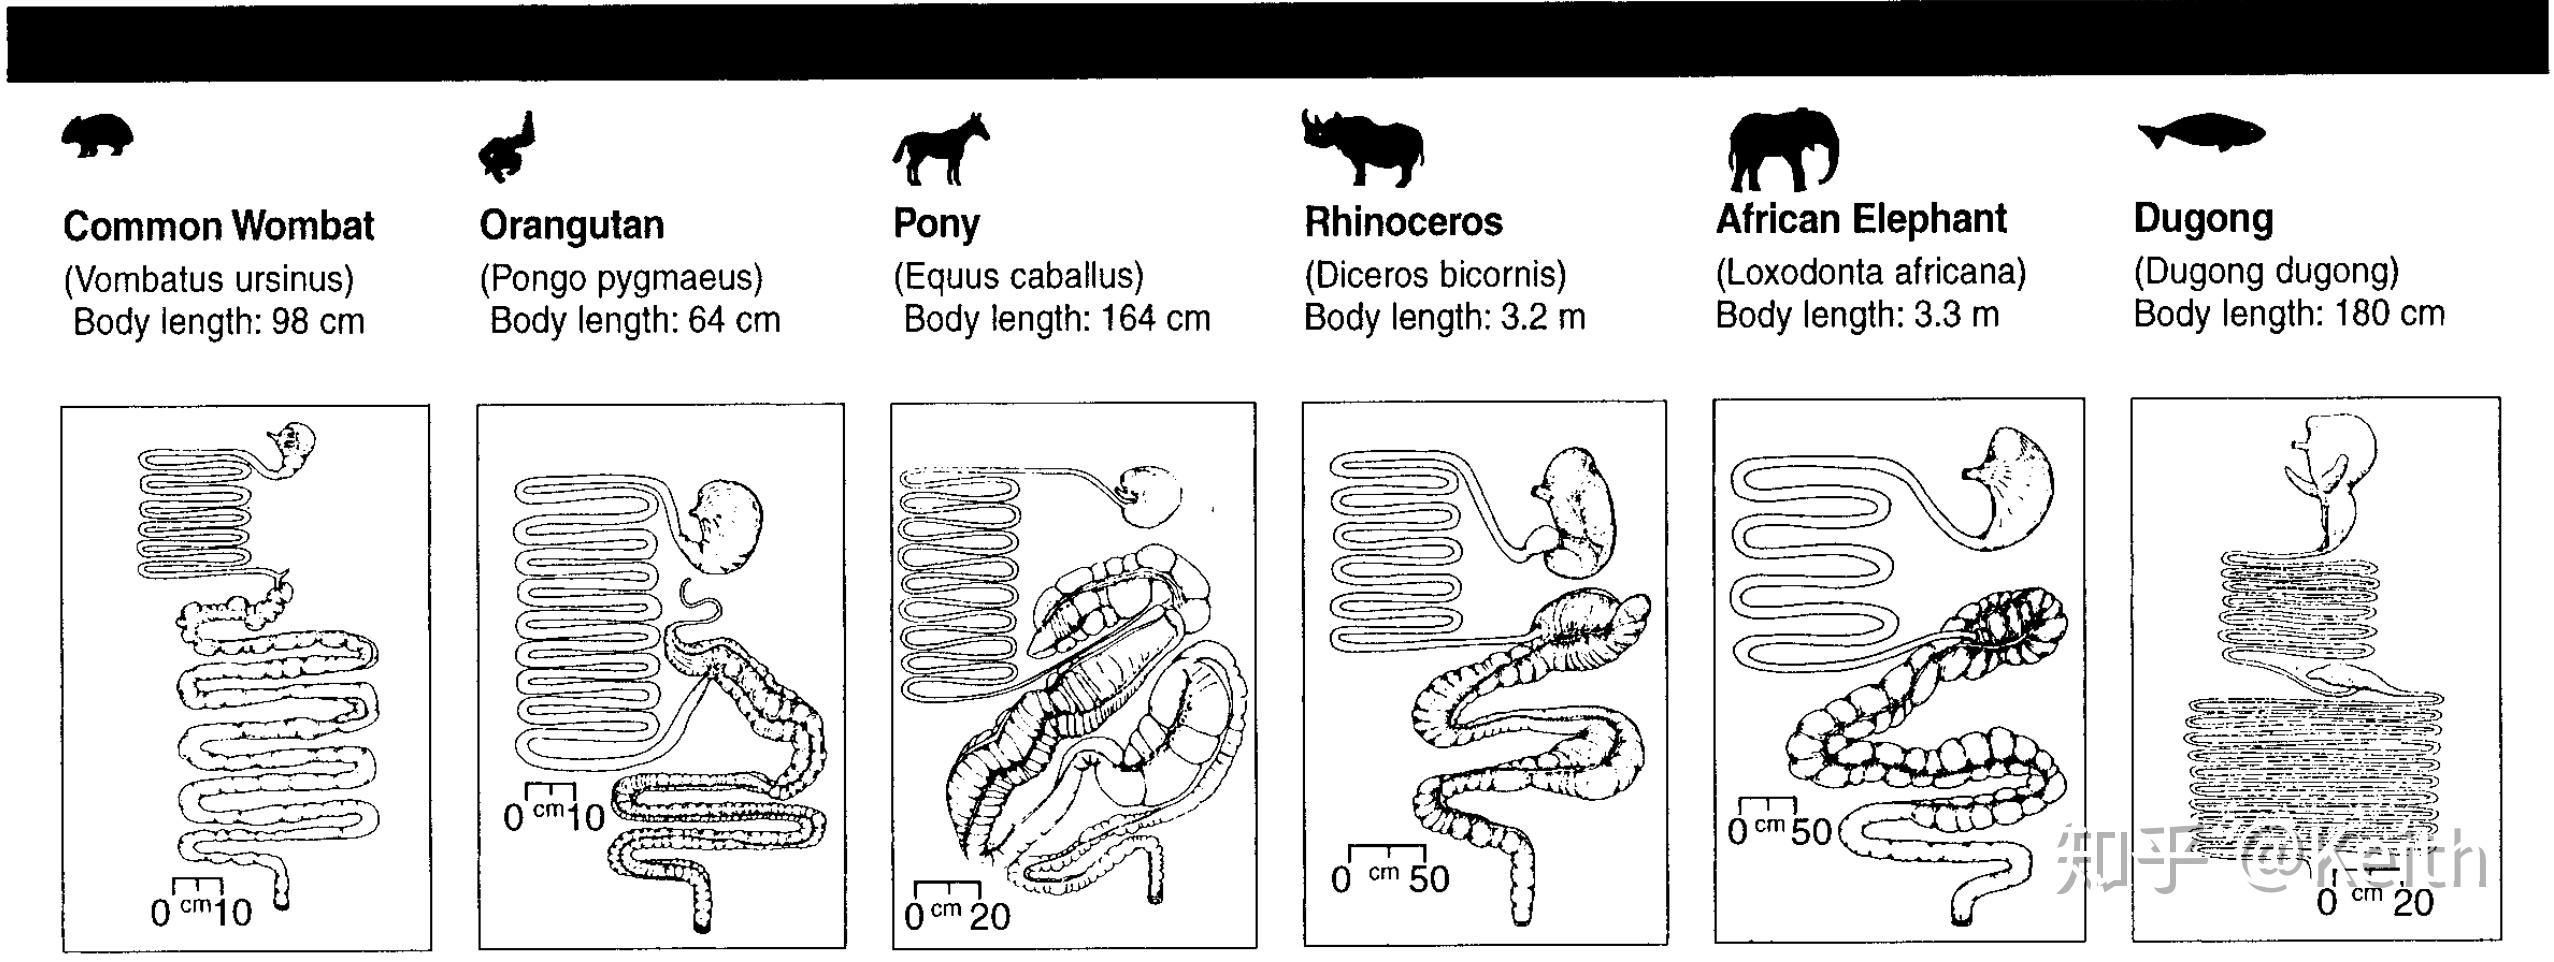 无论是什么动物,消化系统主要的器官包括口腔,食道,胃,小肠,和大肠(含